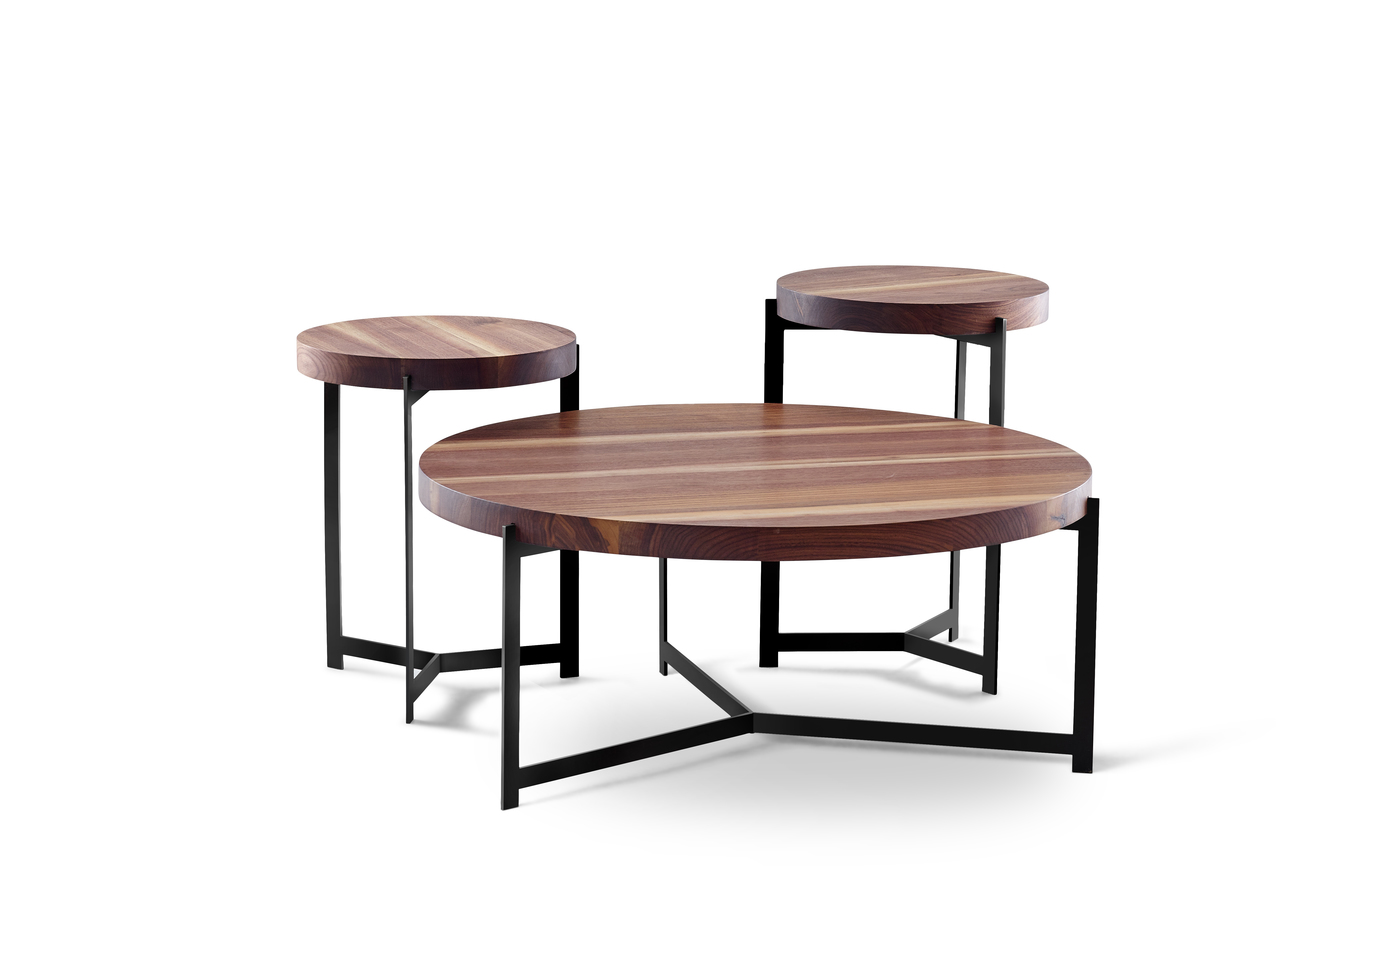 DK3 PLATEAU リビングテーブル - 机/テーブル